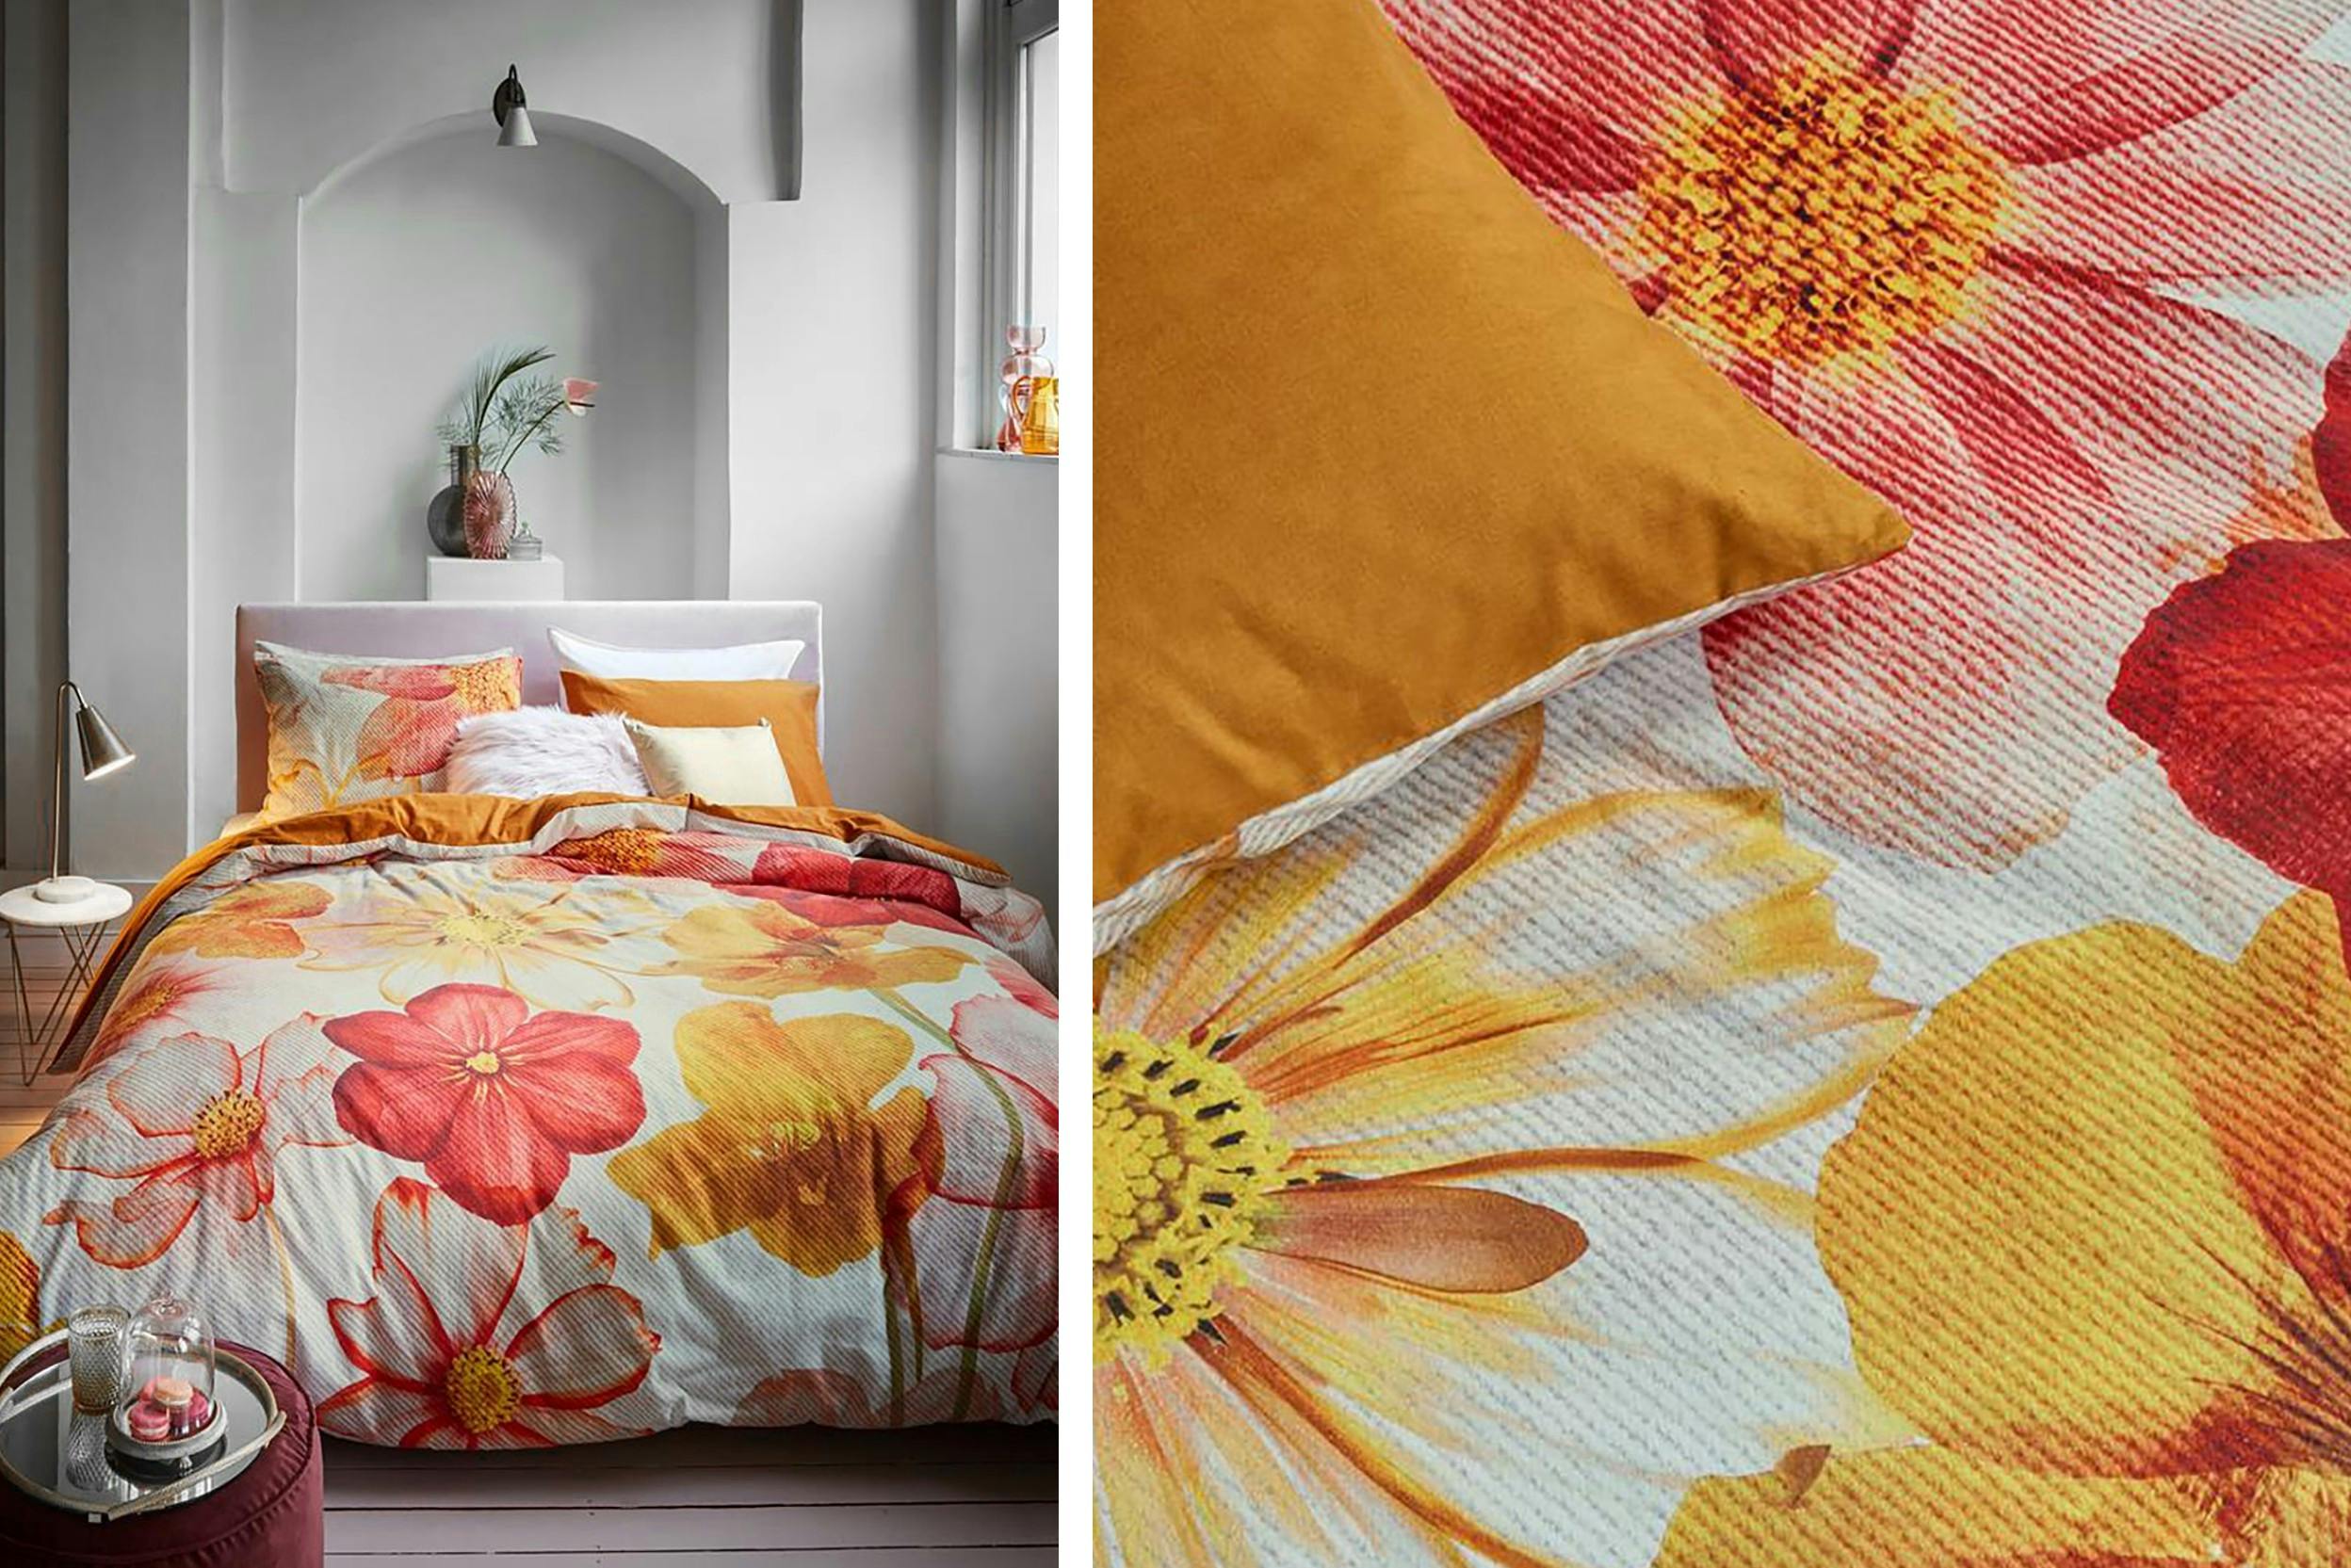 Schlafzimmer mit Flanell-Bettwäsche mit großen Blumen in rot und orange, detailaufnahme Flanell-Bettwäsche